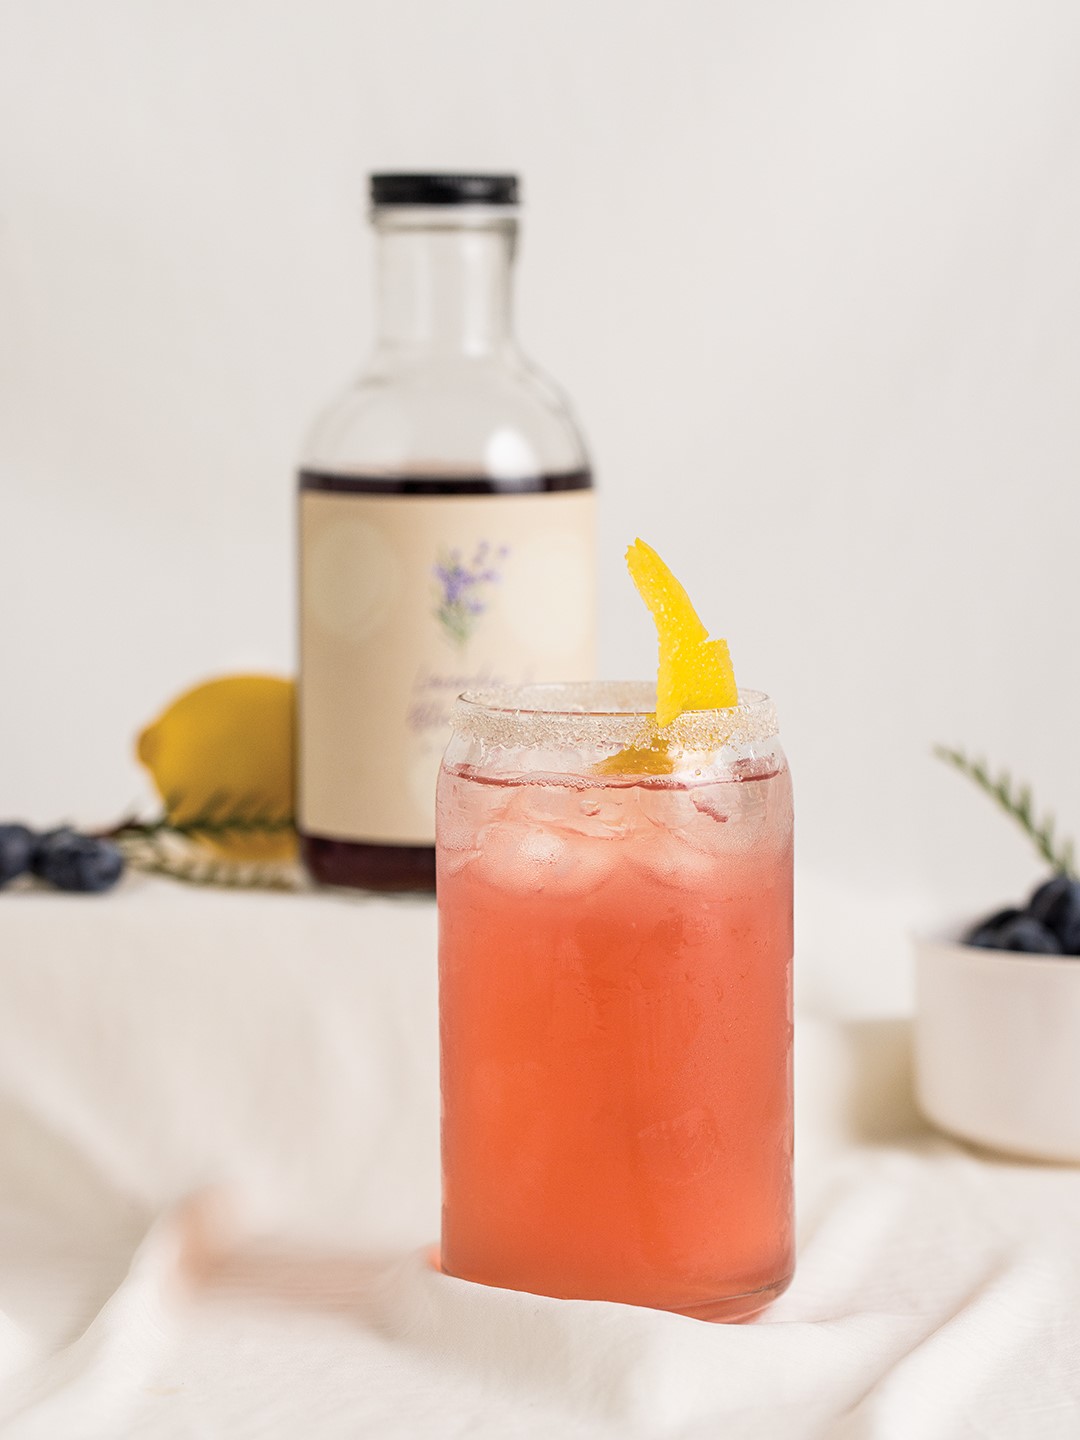 Lavender Blueberry Lemon Drop Martini or Mocktail*